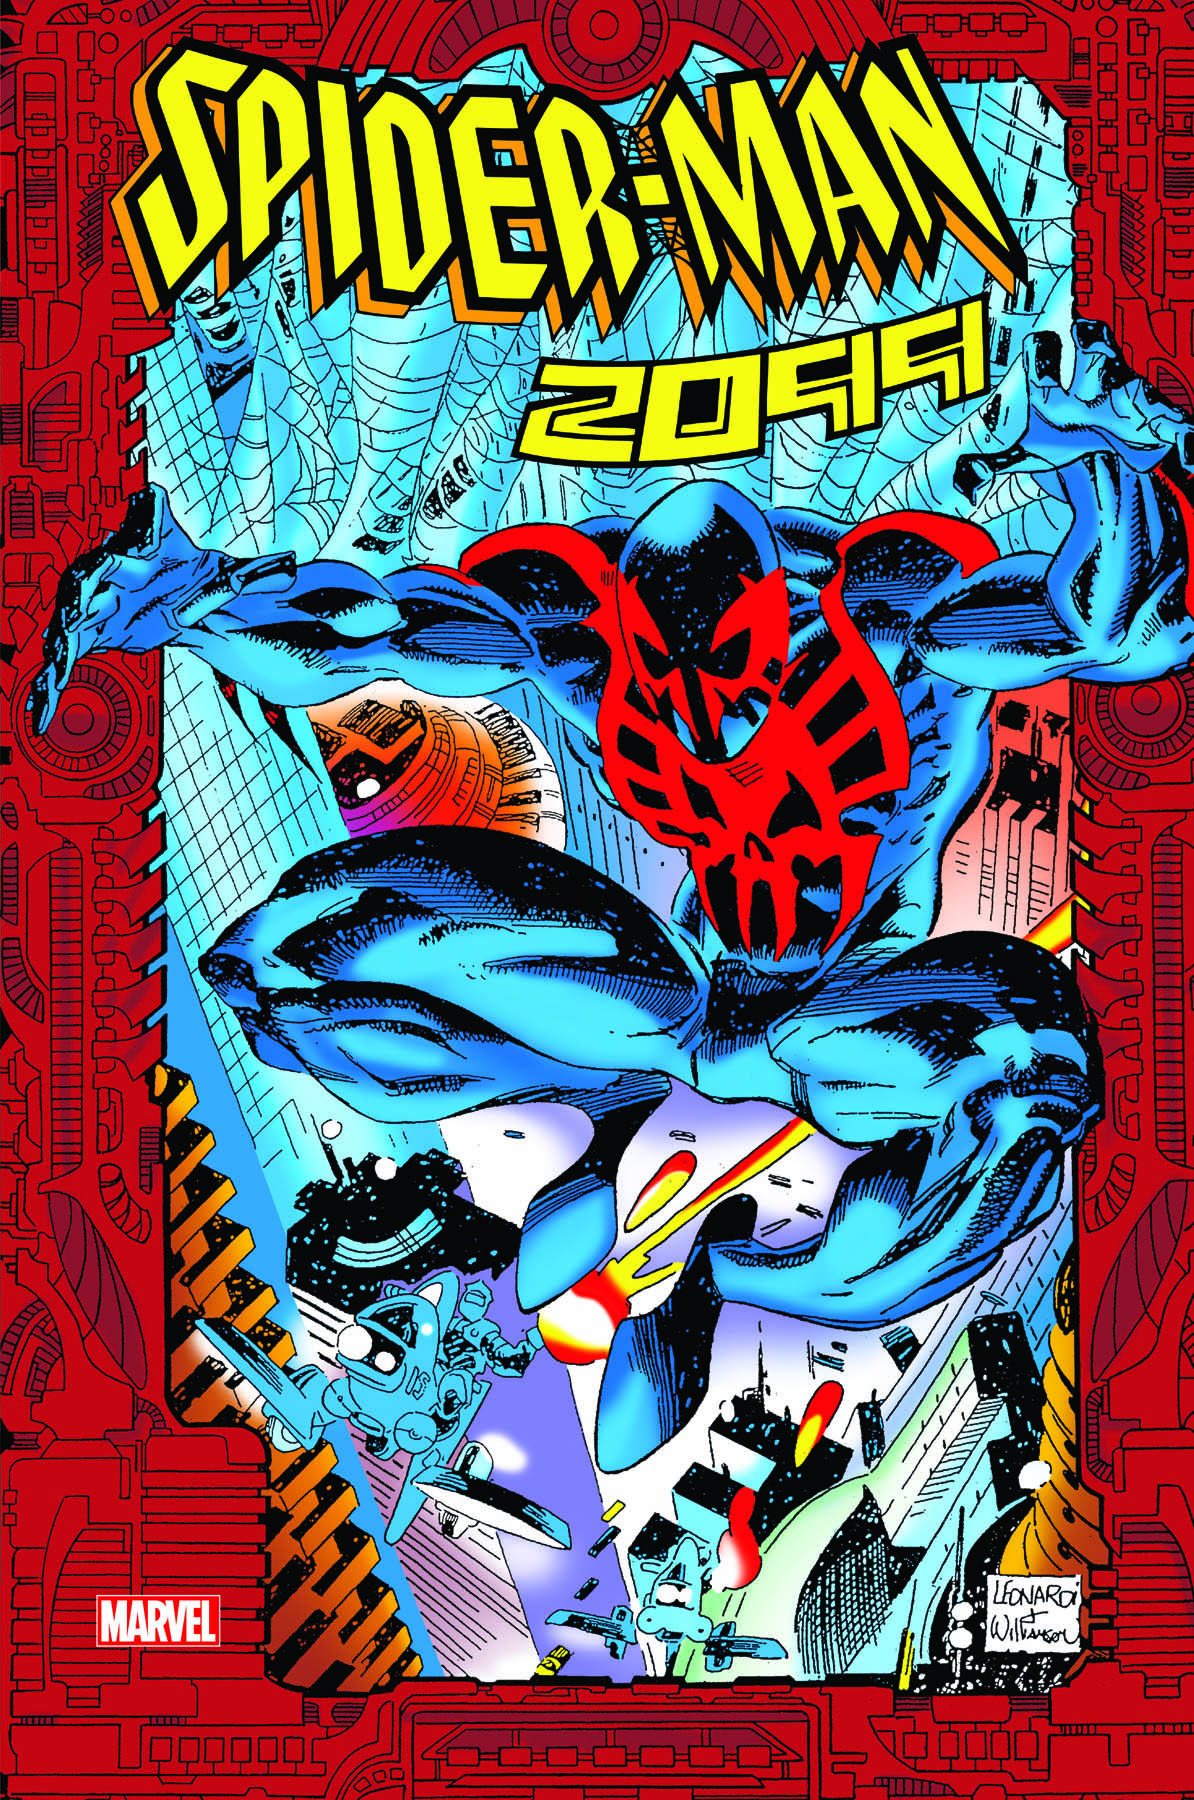 Spider-Man 2099 Omnibus Vol. 1 (Hardcover)